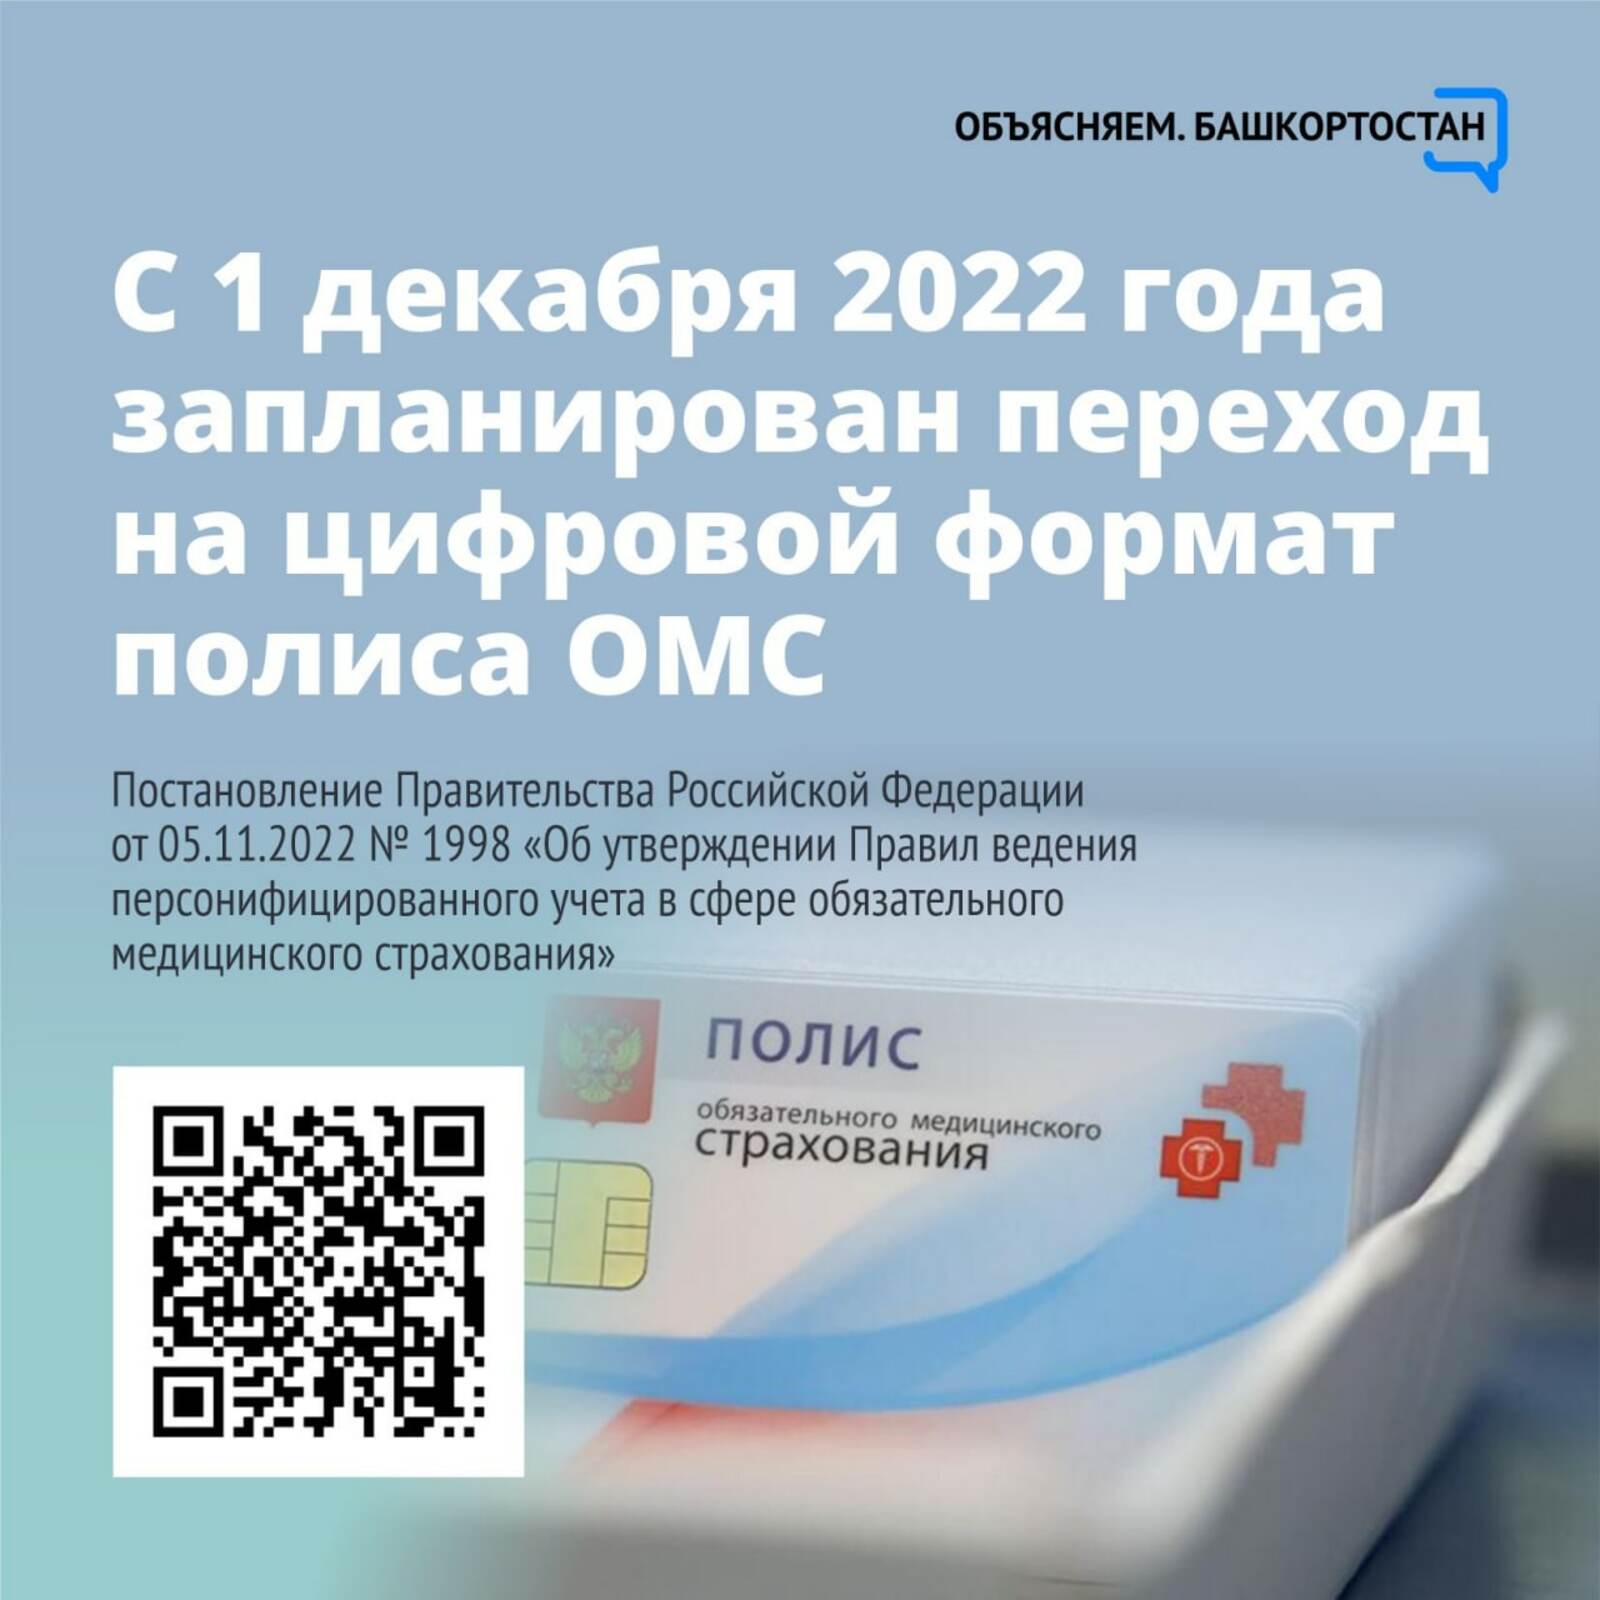 Внимание! С 1 декабря 2022 запланирован переход на цифровой формат полиса ОМС